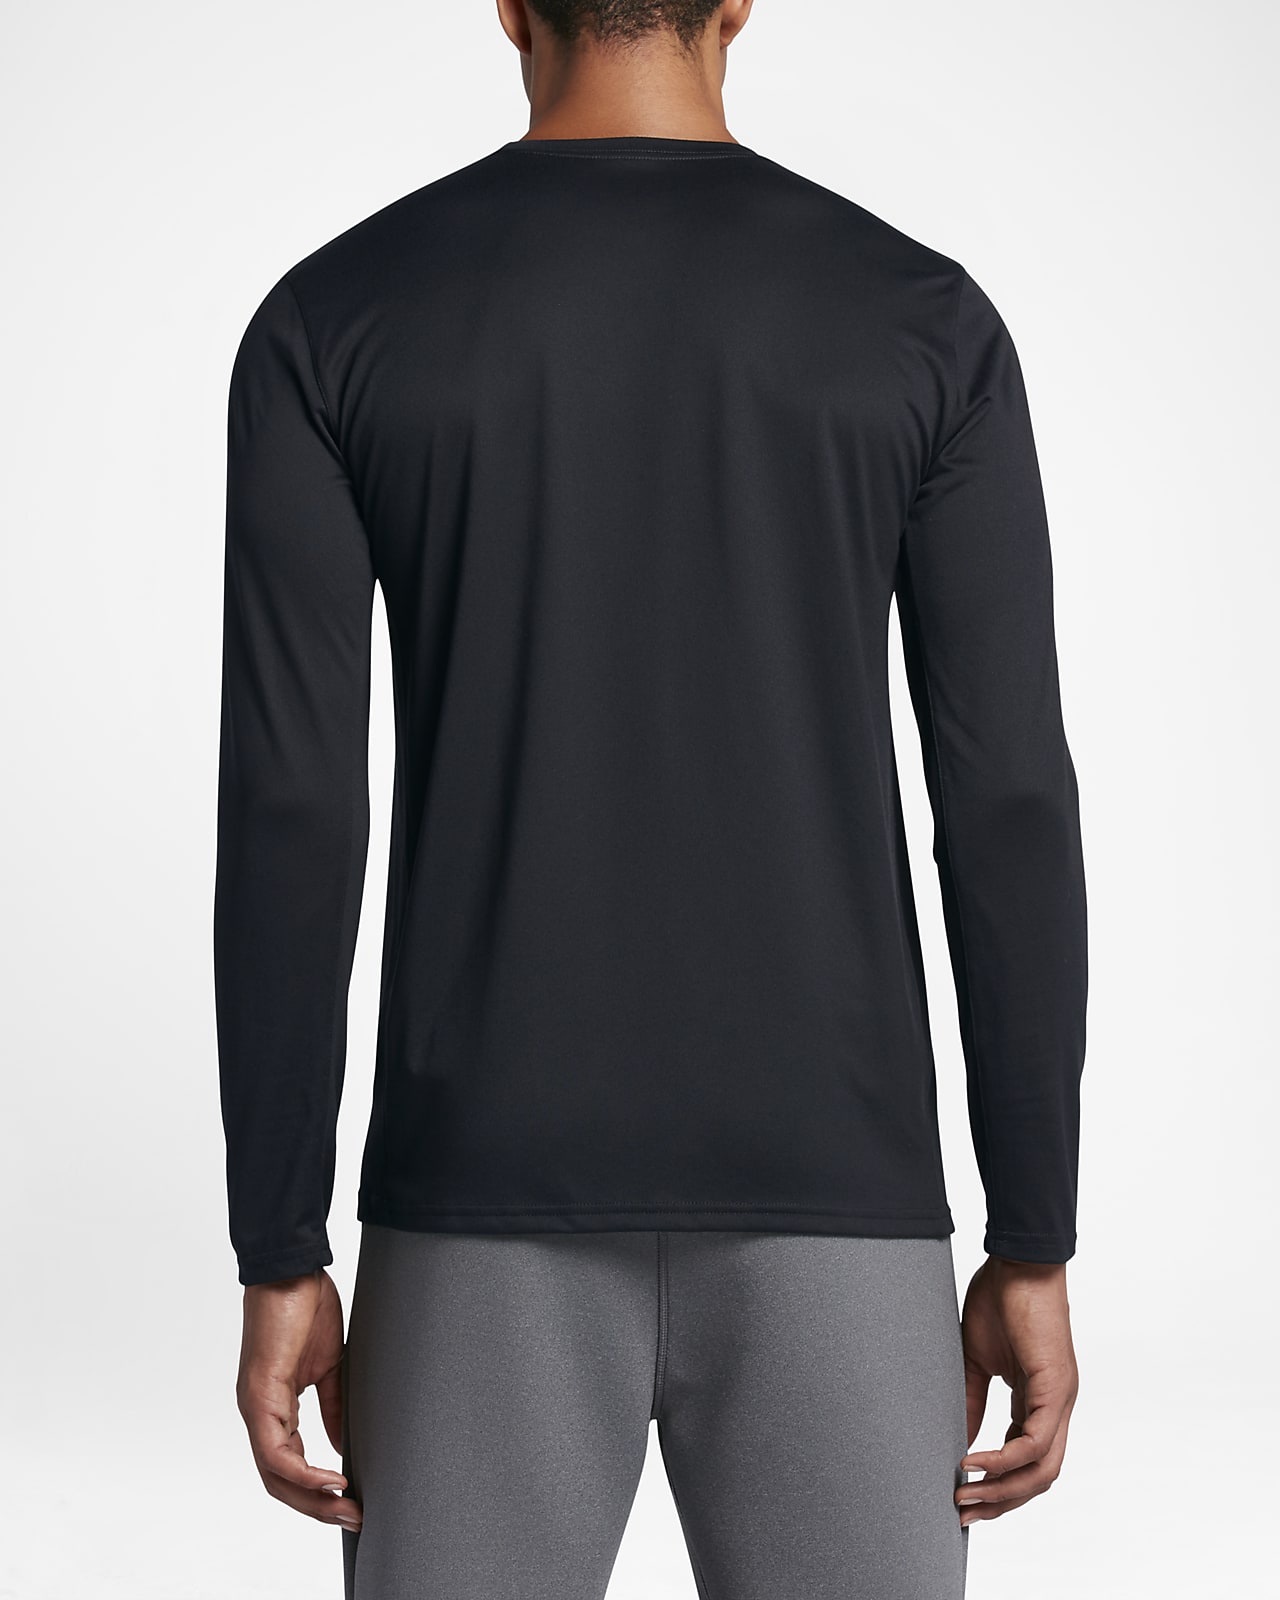 Nike Dri-FIT Men's Long-Sleeve Training T-Shirt. Nike PH